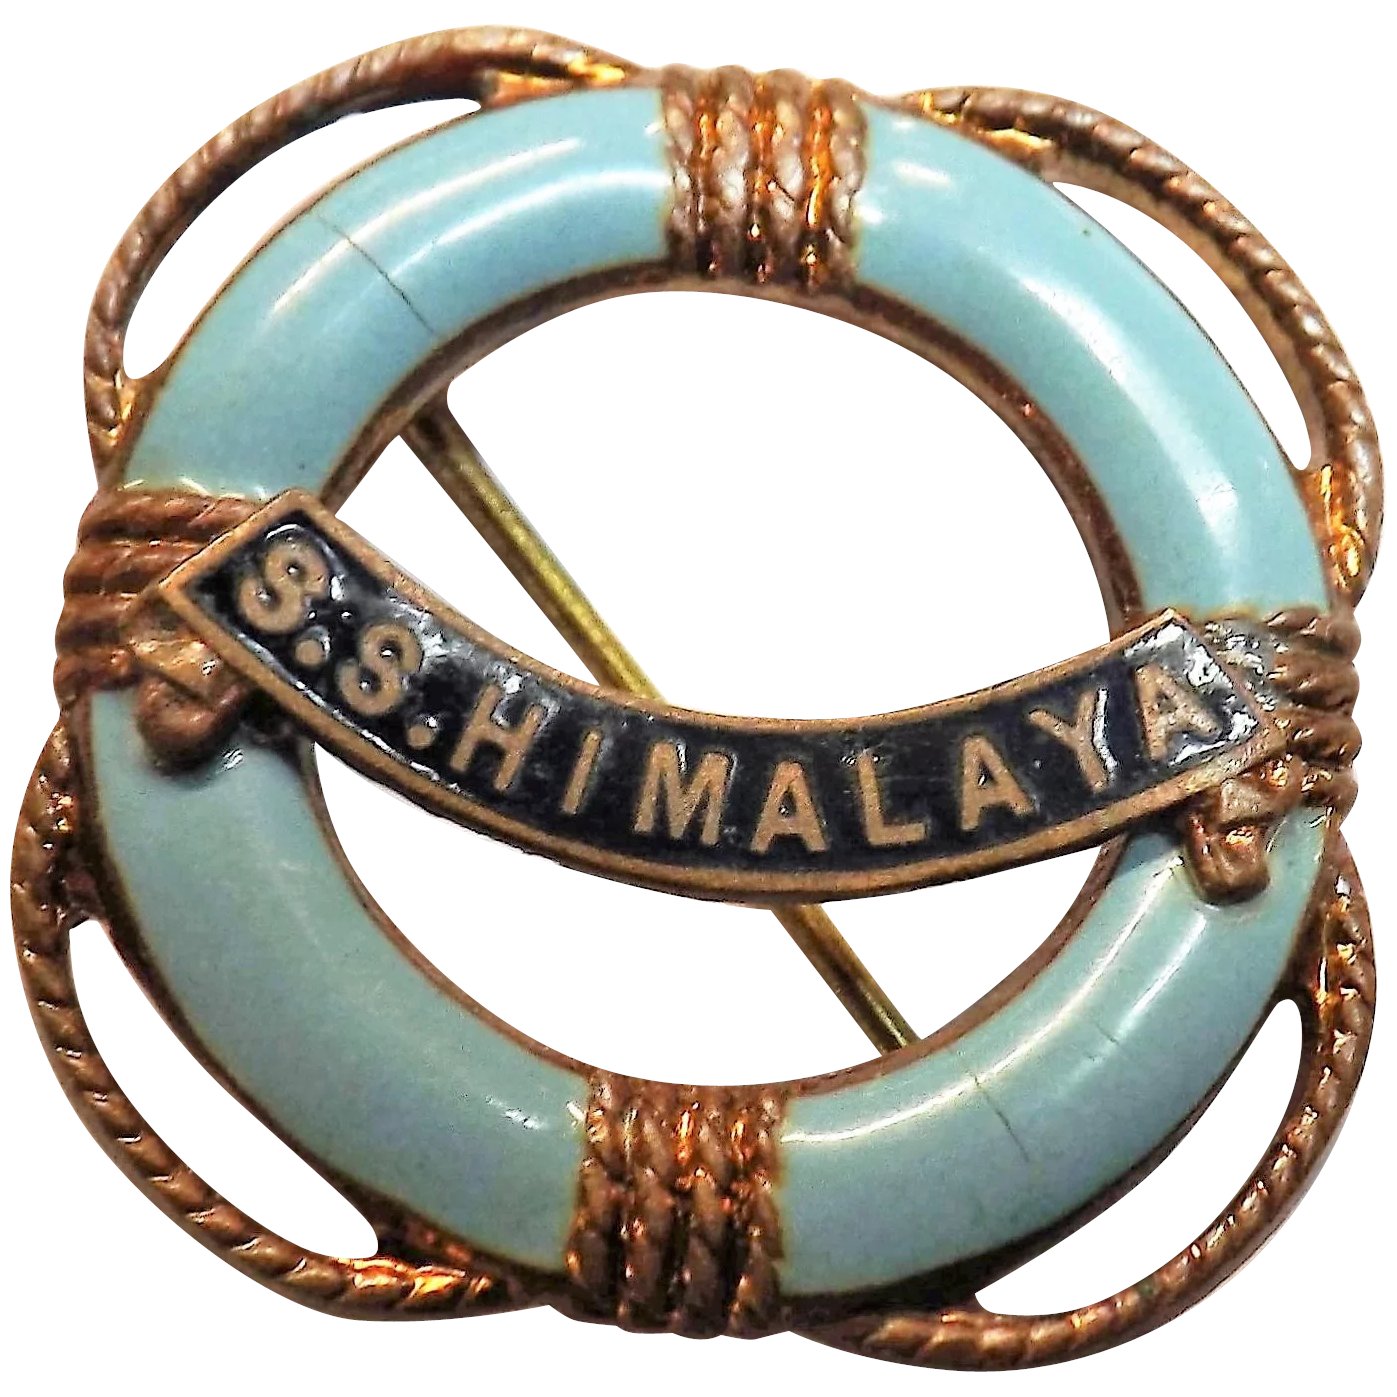 S.S. Himalaya - Souvenir Ships Badge